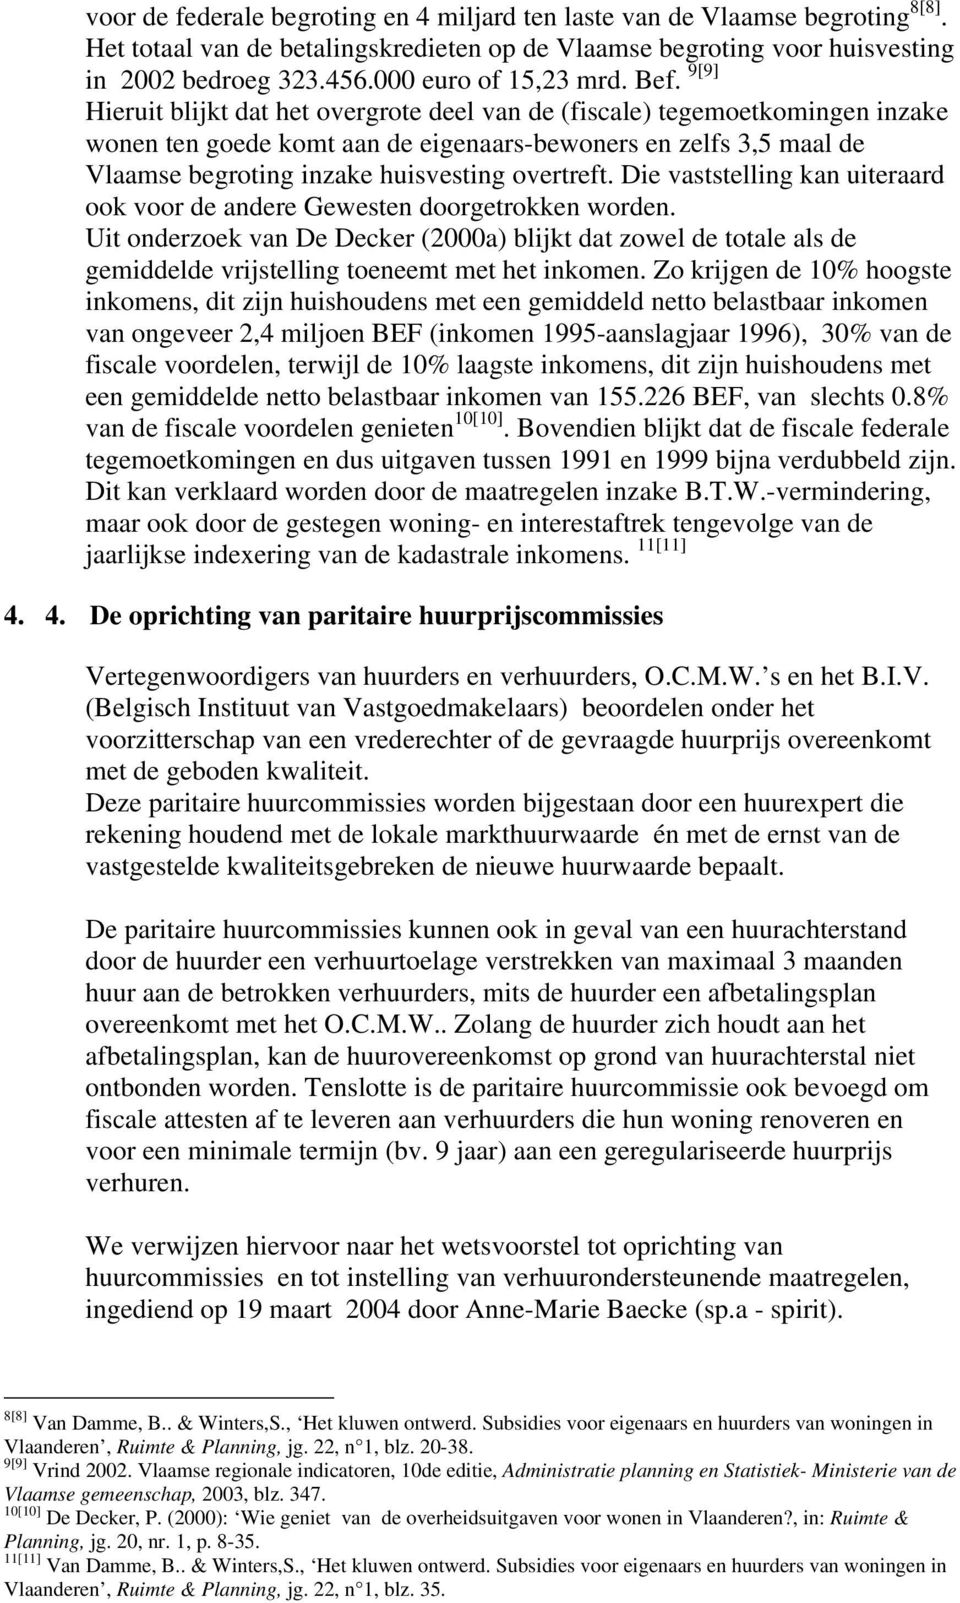 9[9] Hieruit blijkt dat het overgrote deel van de (fiscale) tegemoetkomingen inzake wonen ten goede komt aan de eigenaars-bewoners en zelfs 3,5 maal de Vlaamse begroting inzake huisvesting overtreft.